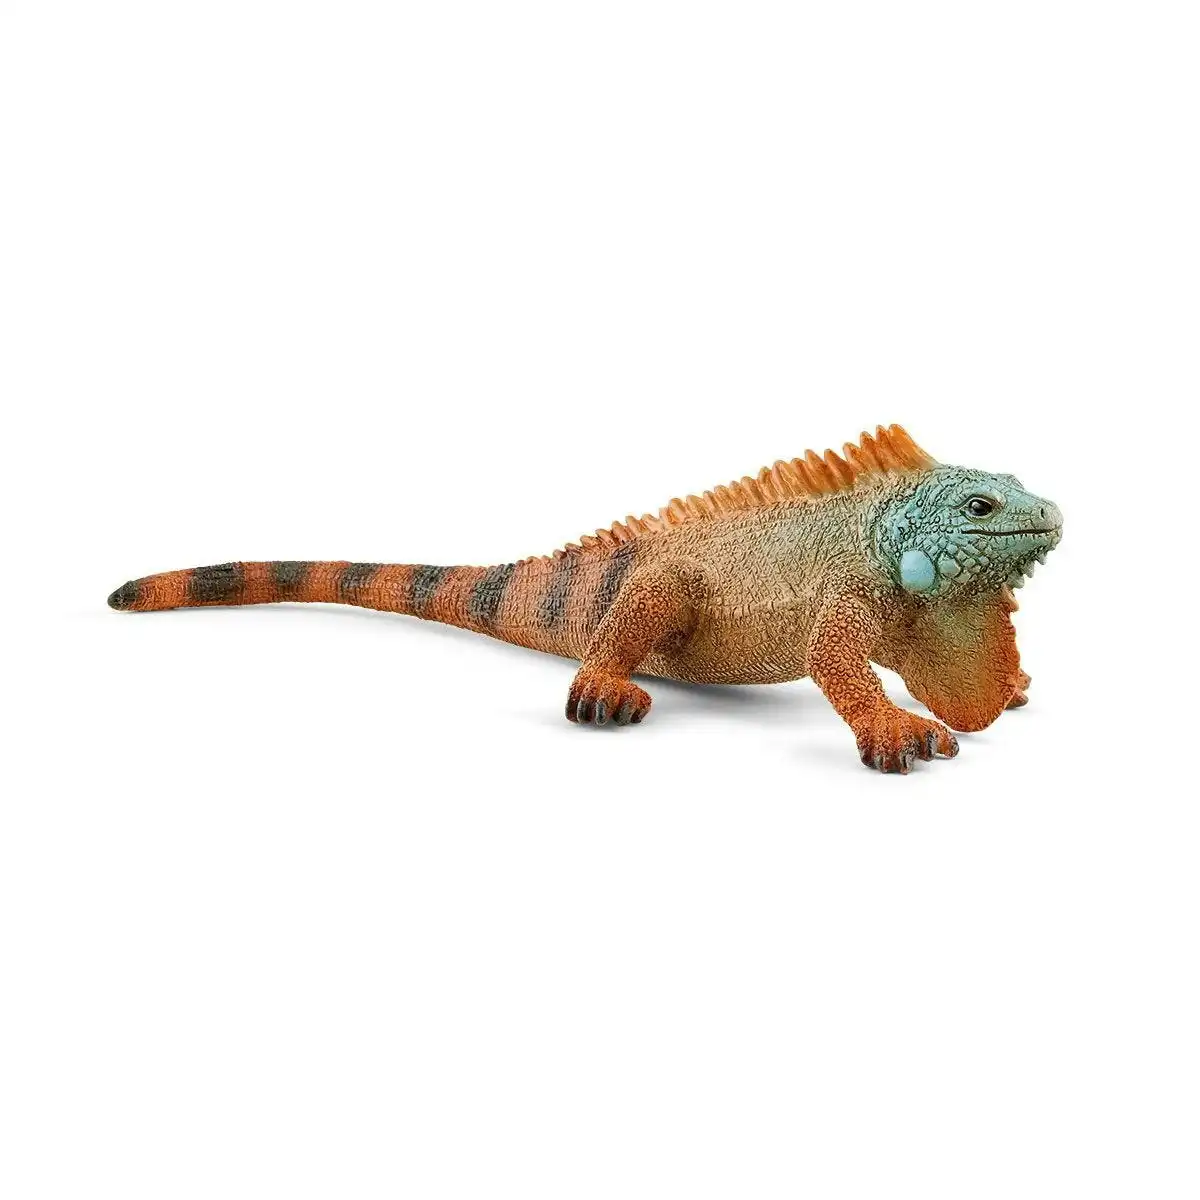 Schleich - Iguana Lizard Figurine